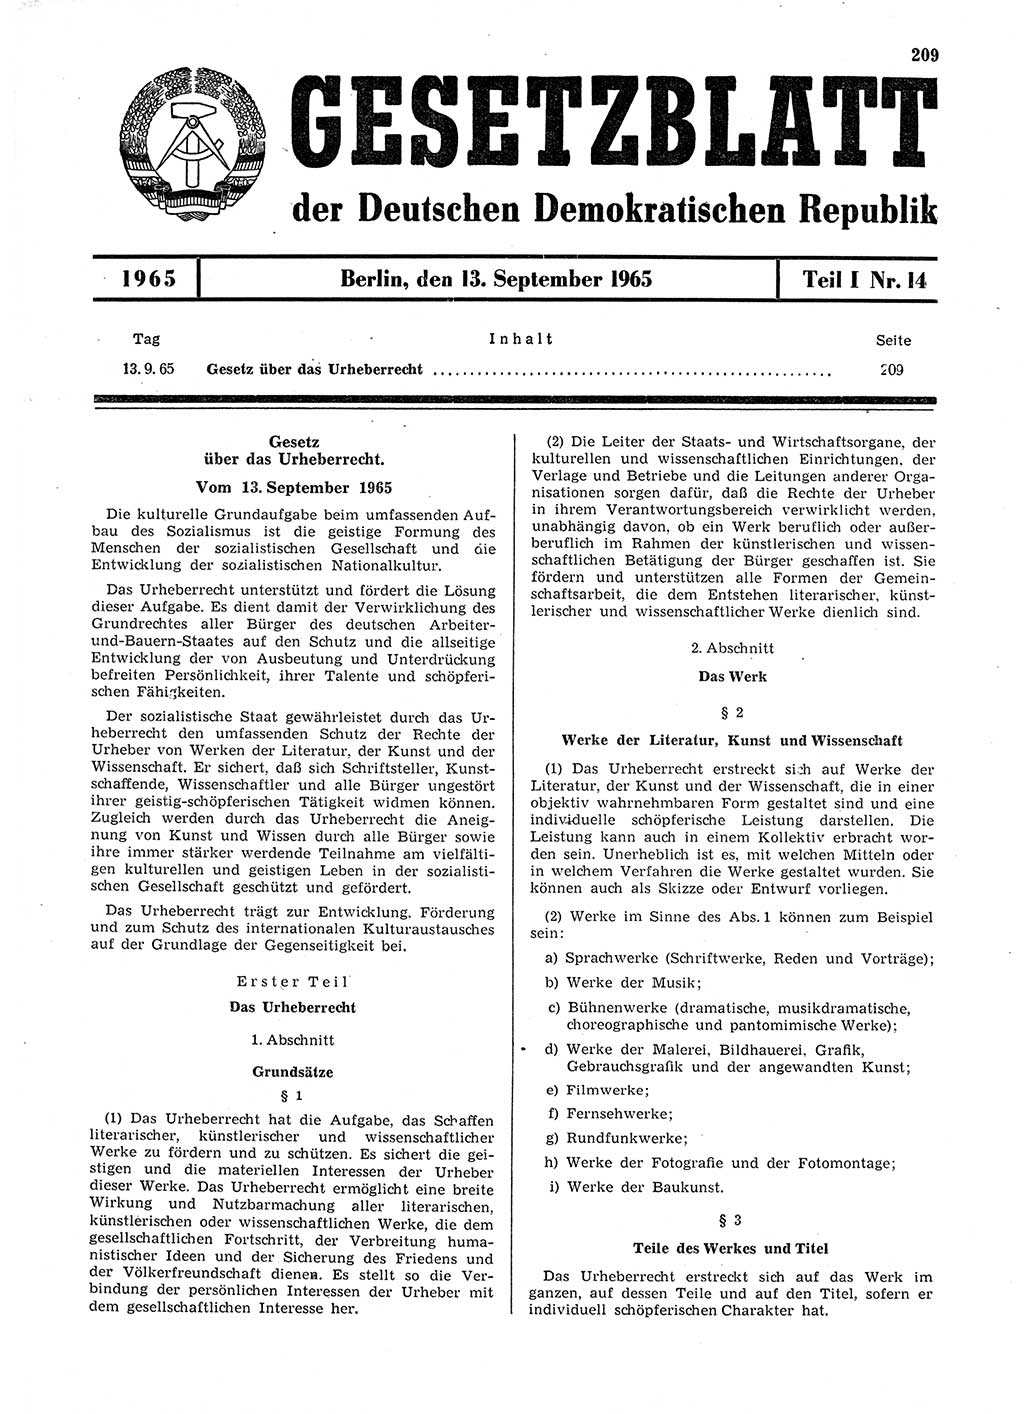 Gesetzblatt (GBl.) der Deutschen Demokratischen Republik (DDR) Teil Ⅰ 1965, Seite 209 (GBl. DDR Ⅰ 1965, S. 209)